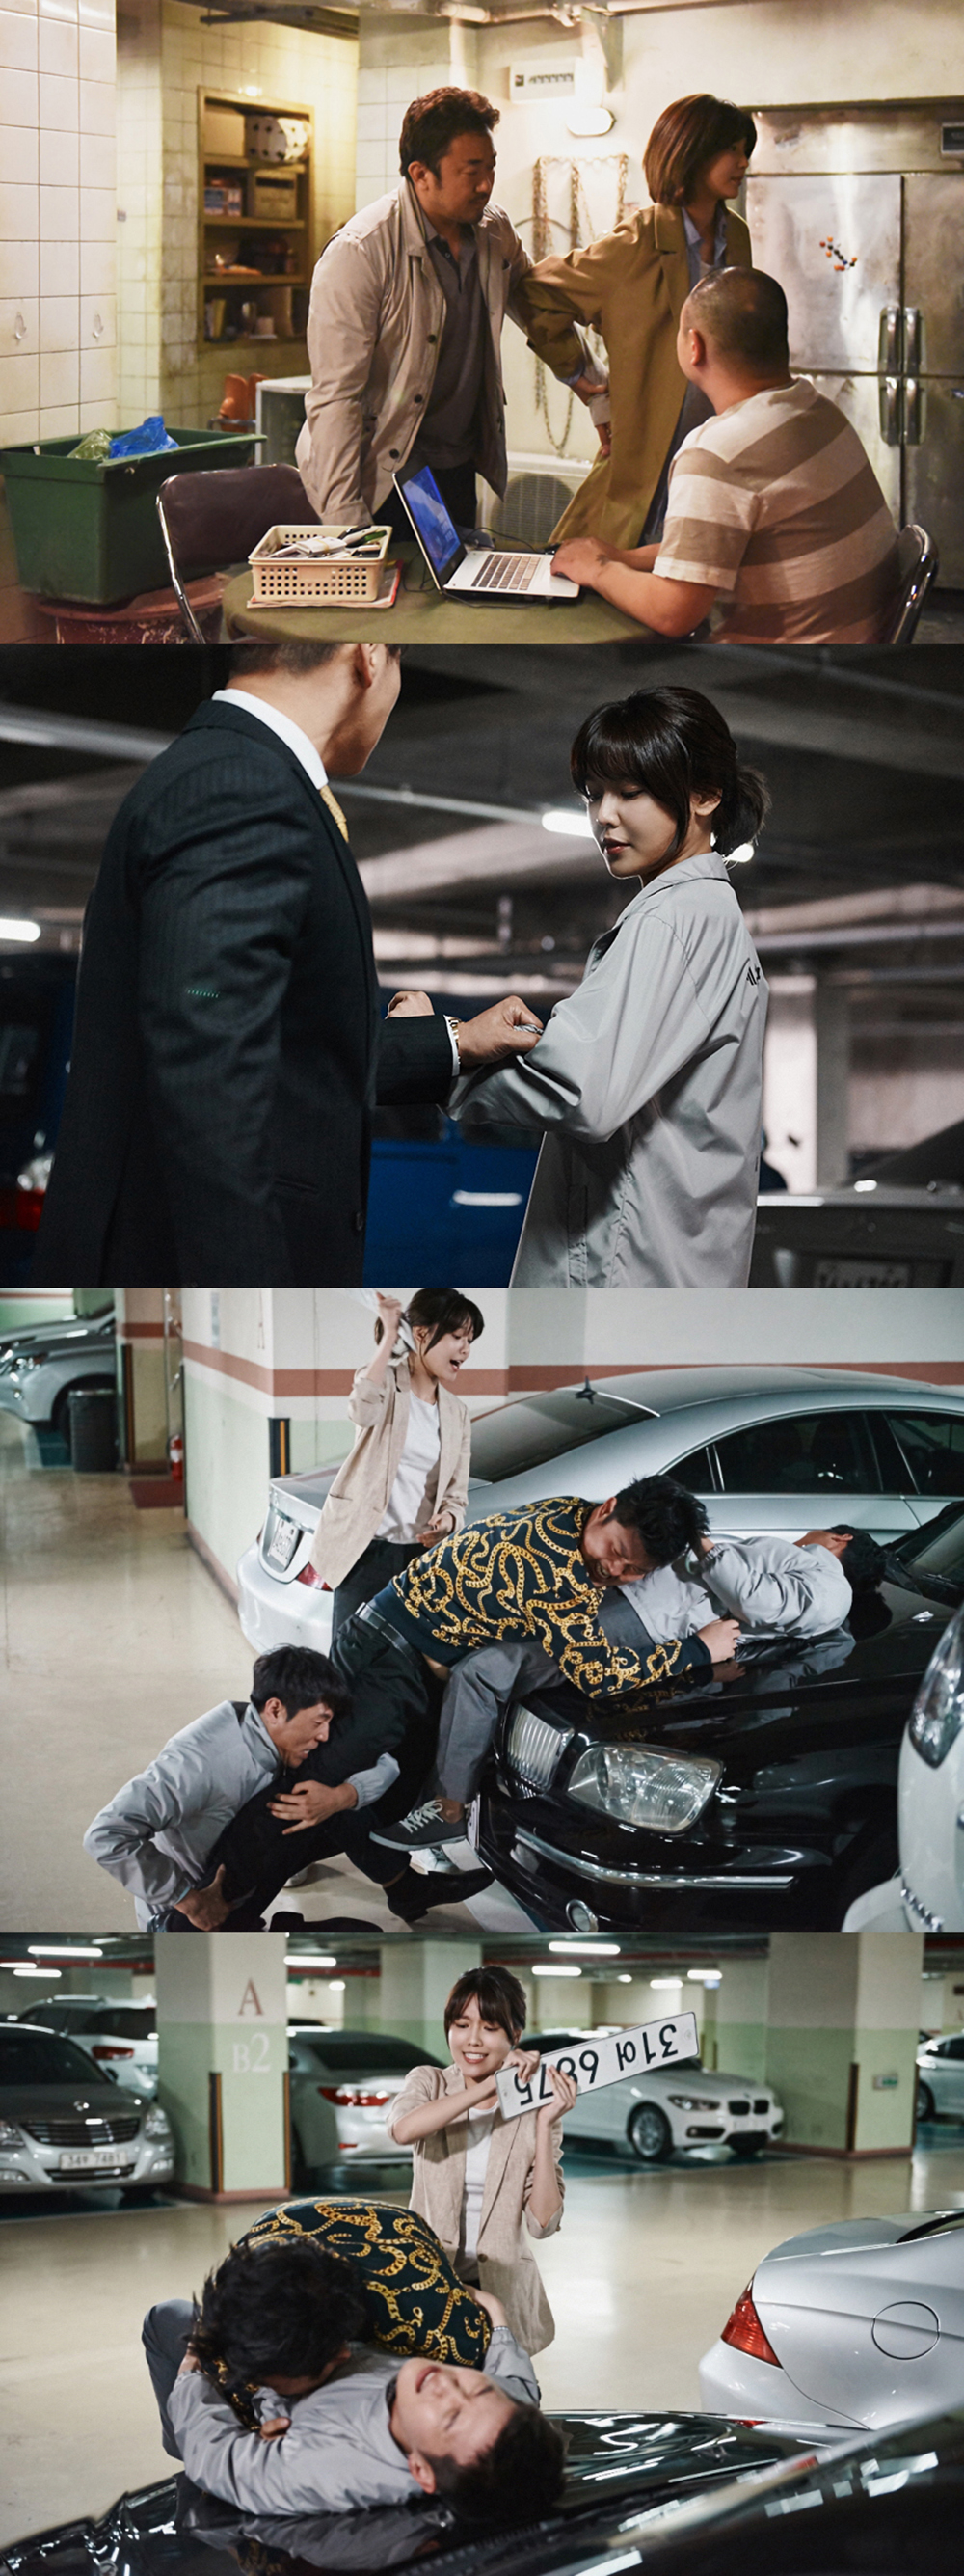 [OTHER][23-03-2016]SooYoung đảm nhận vai chính trong bộ phim của kênh OCN - "38 Police Squad" - Page 3 2016062510331931593_1